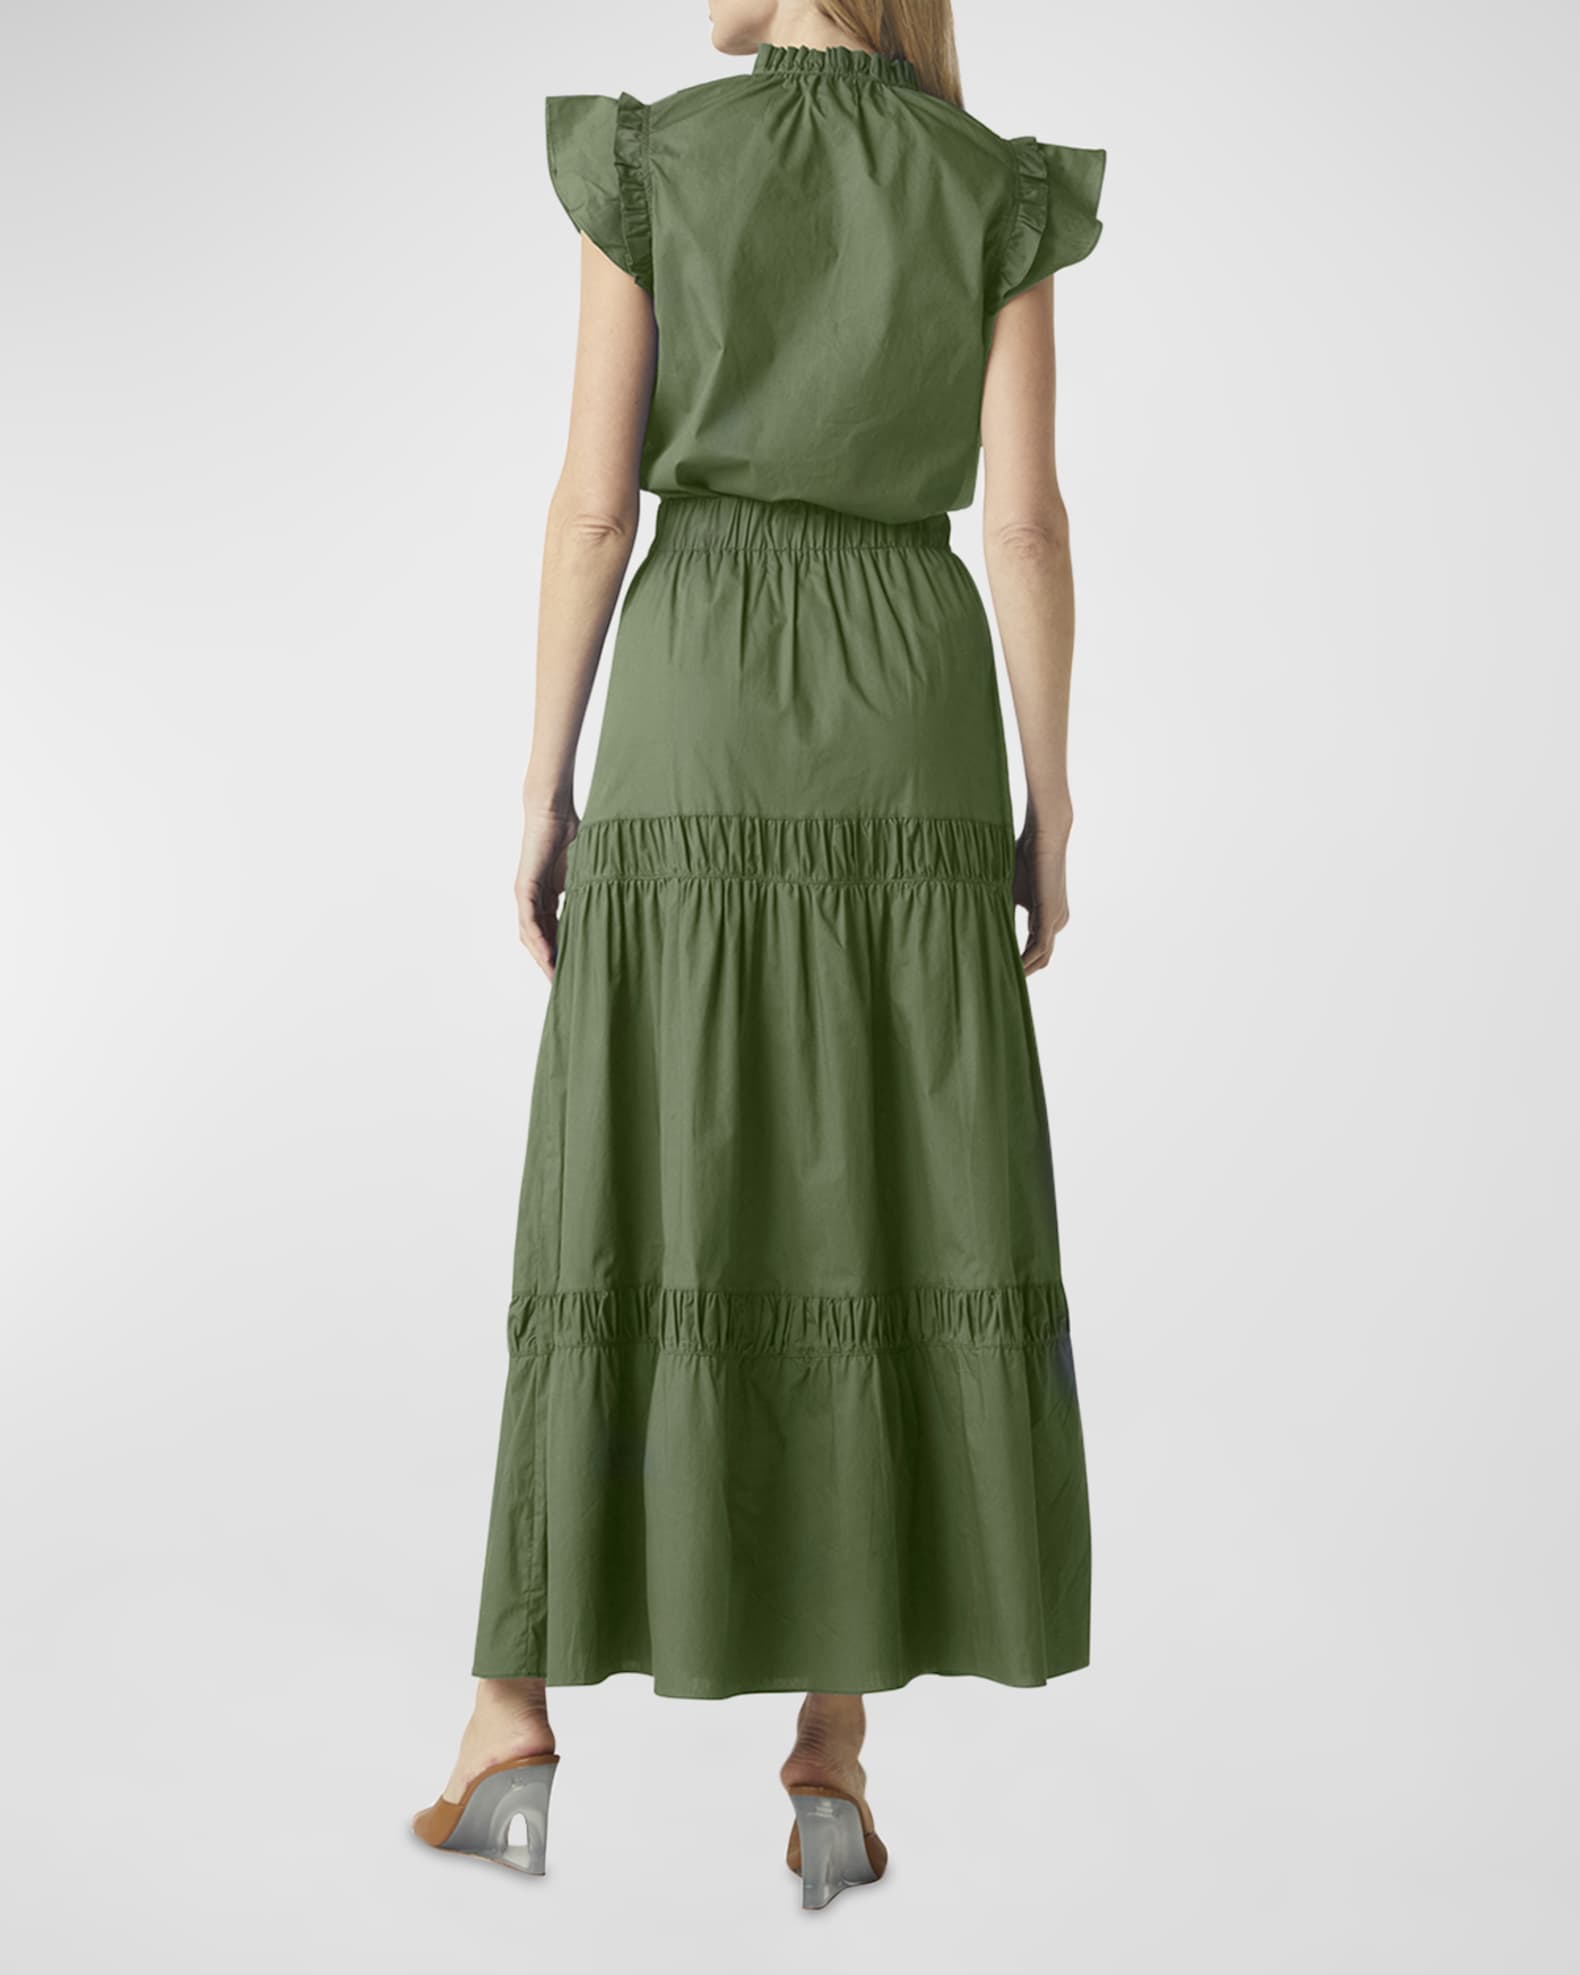 Messina polka dot linen dress, Buy Online